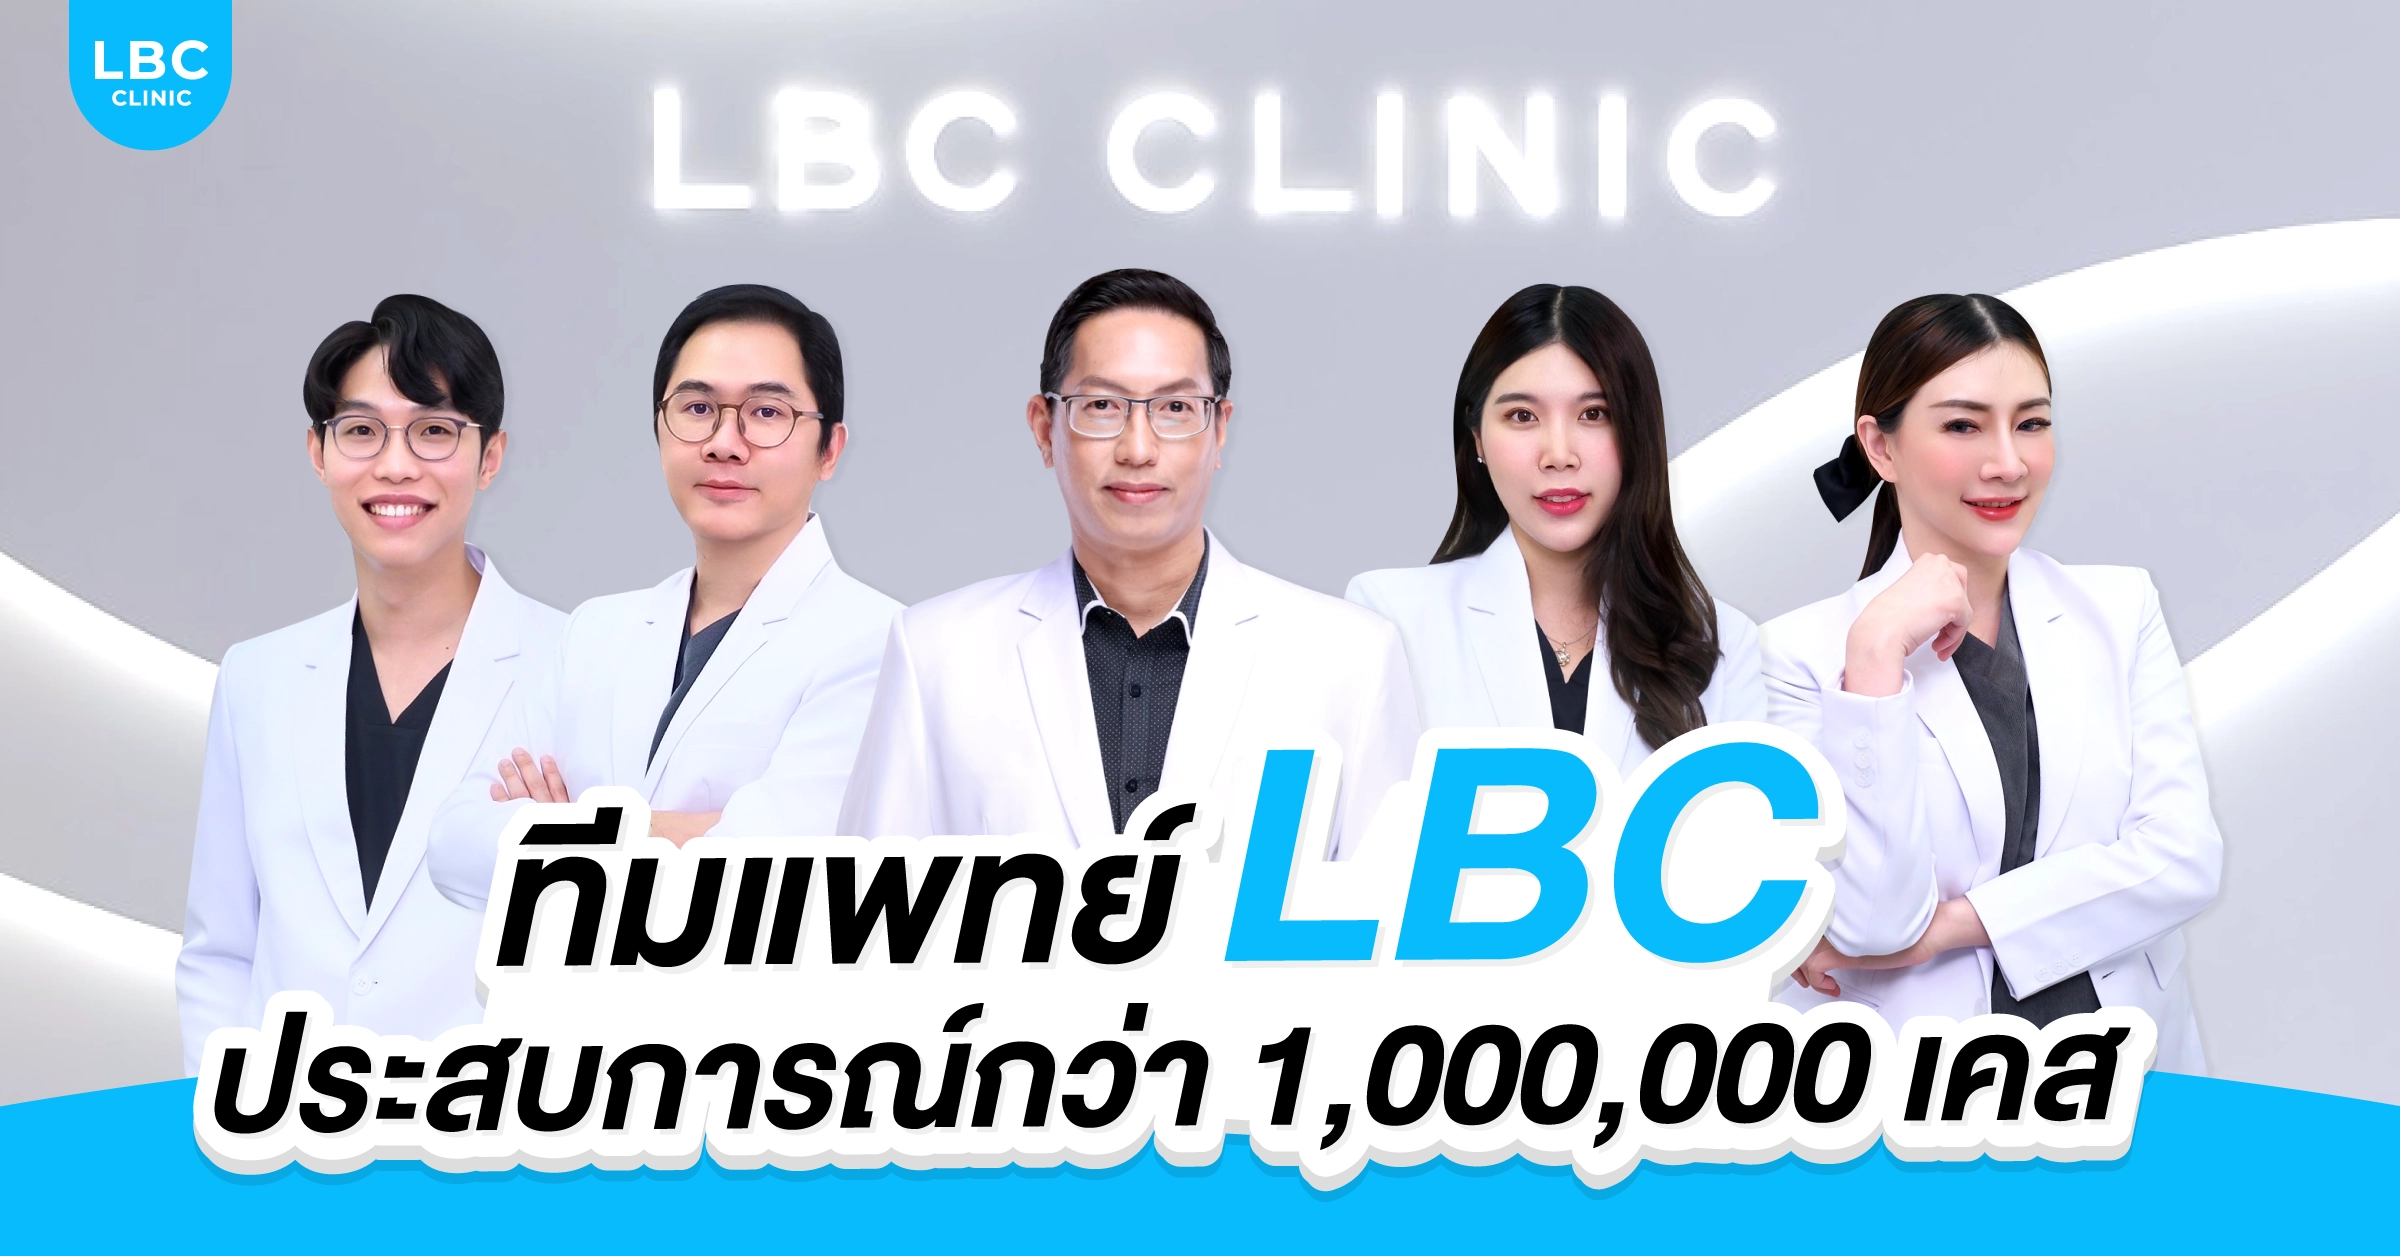 ทีมแพทย์ LBC  ประสบการณ์กว่า 1,000,0000 เคส